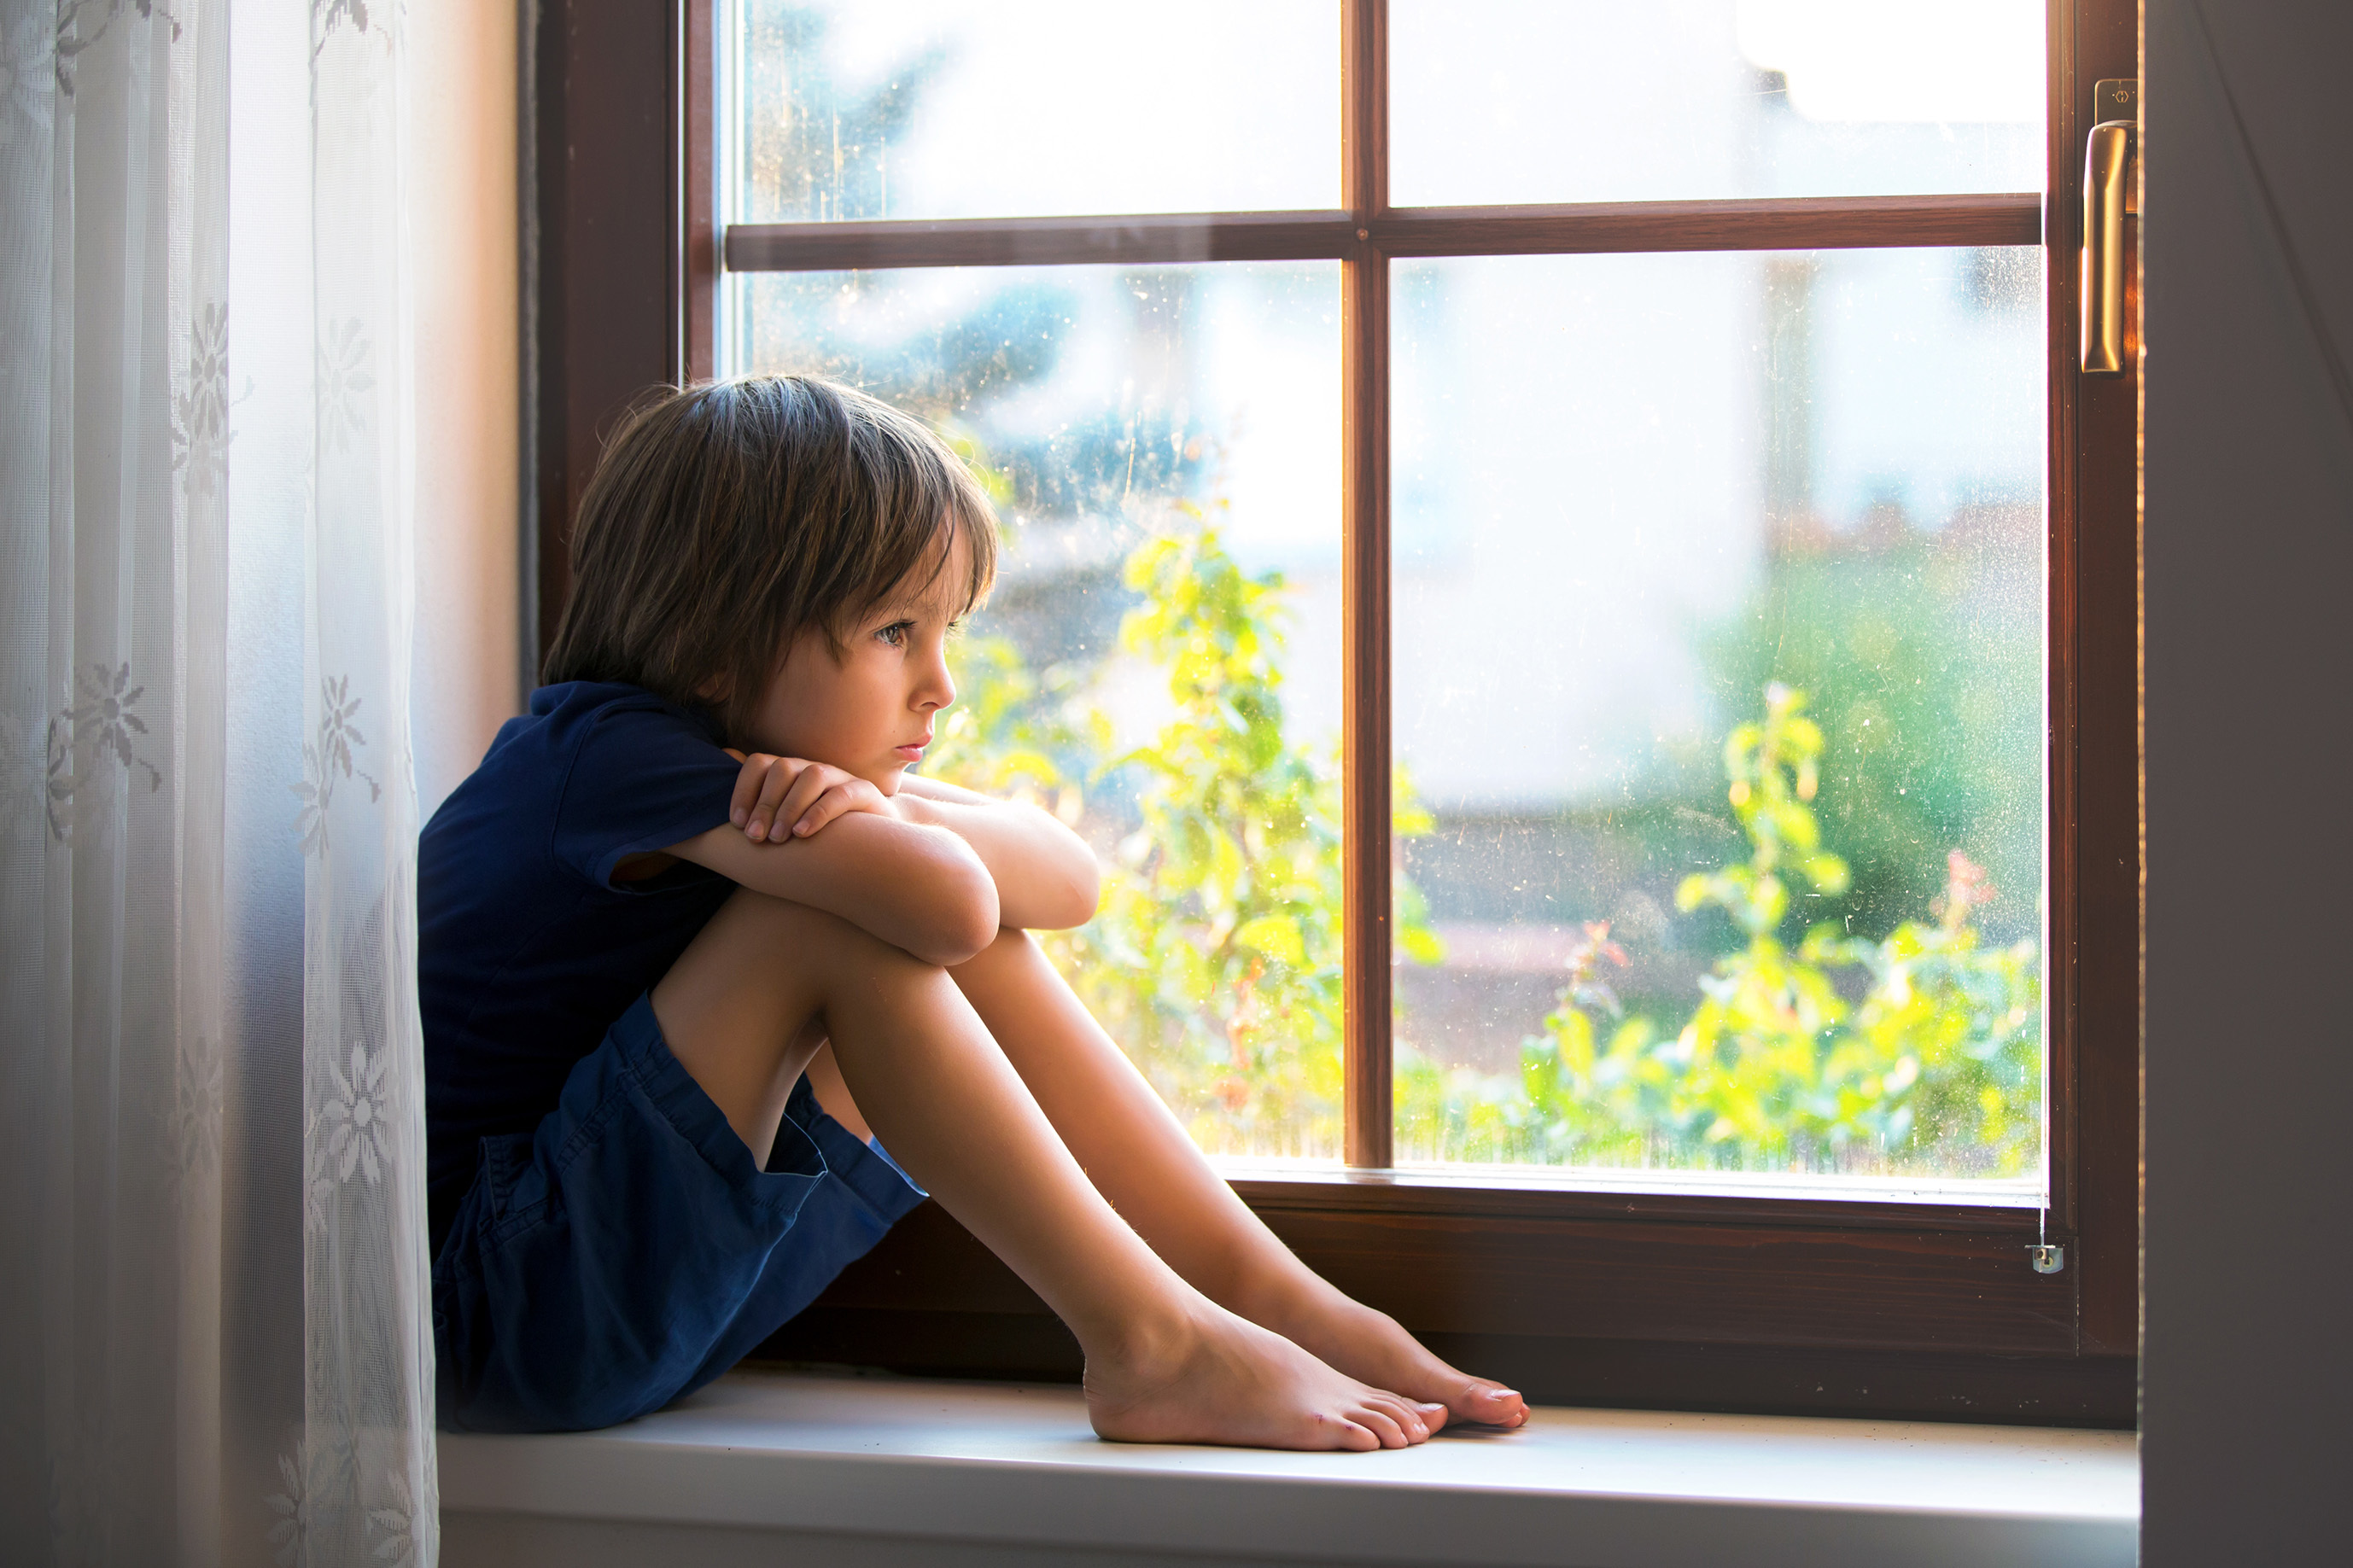 Un 13% ms de poblacin infantil y adolescente se siente triste respecto a hace tres aos.